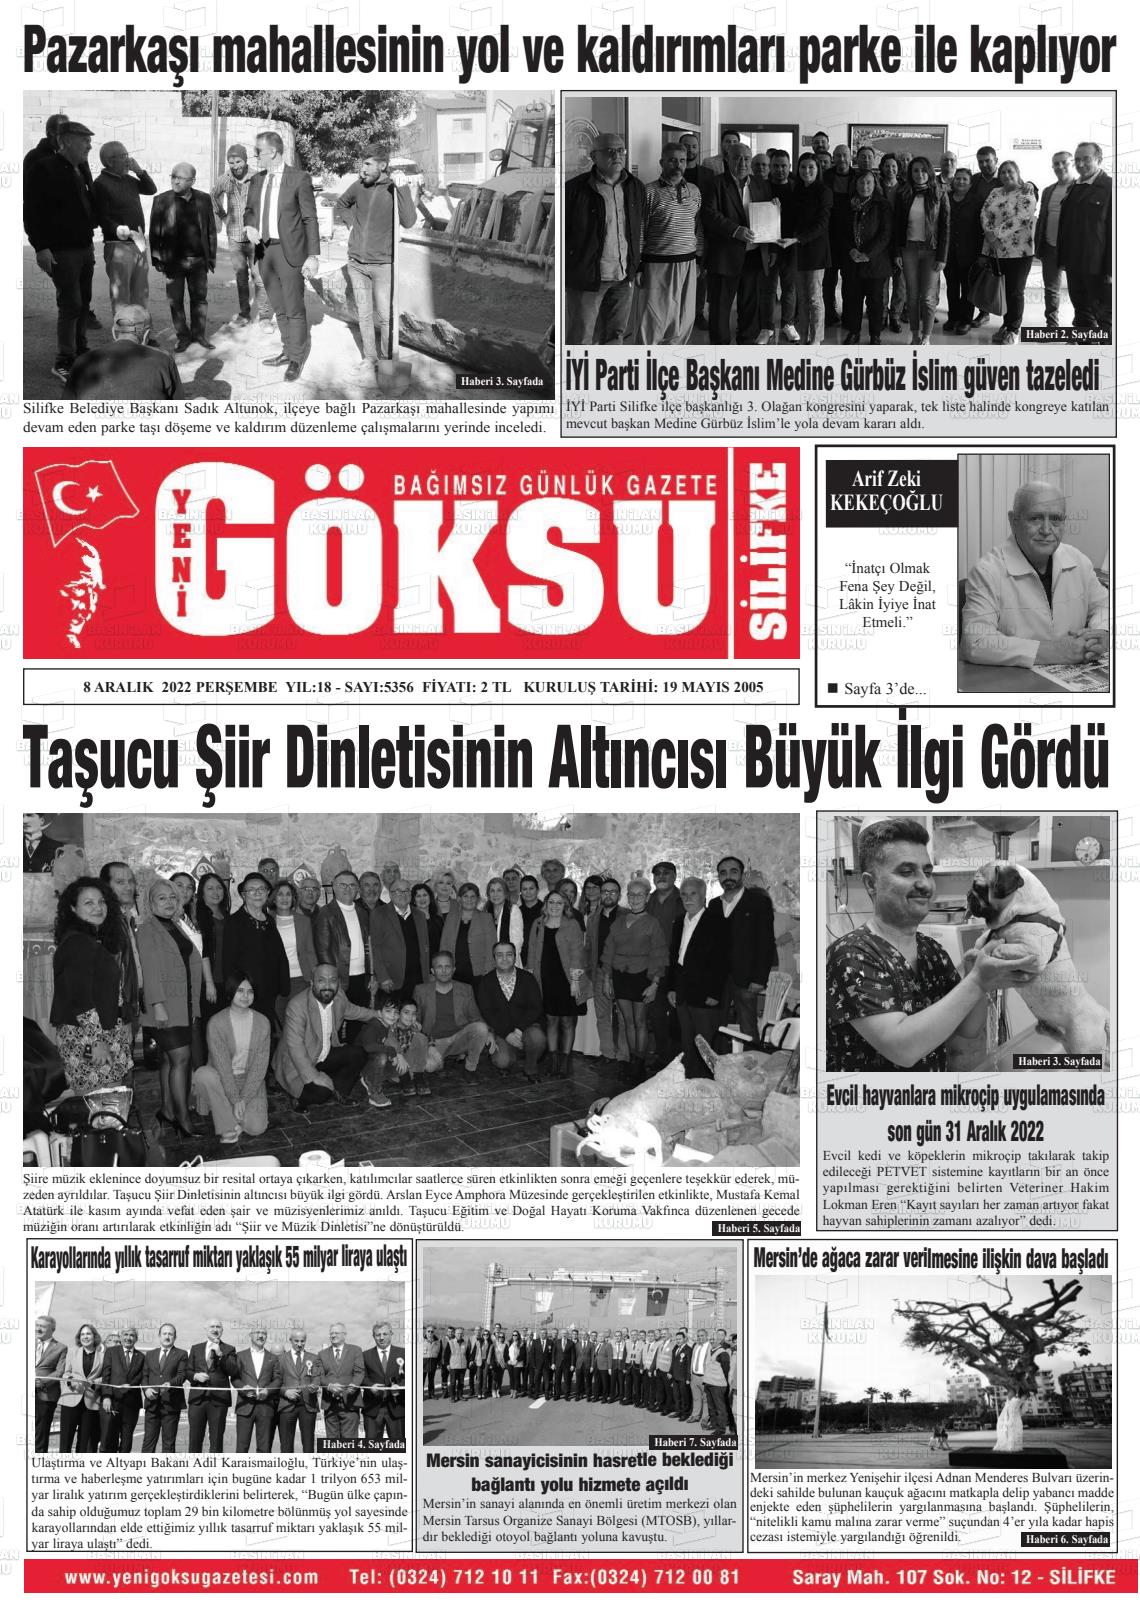 08 Aralık 2022 YENİ GÖKSU GAZETESİ Gazete Manşeti